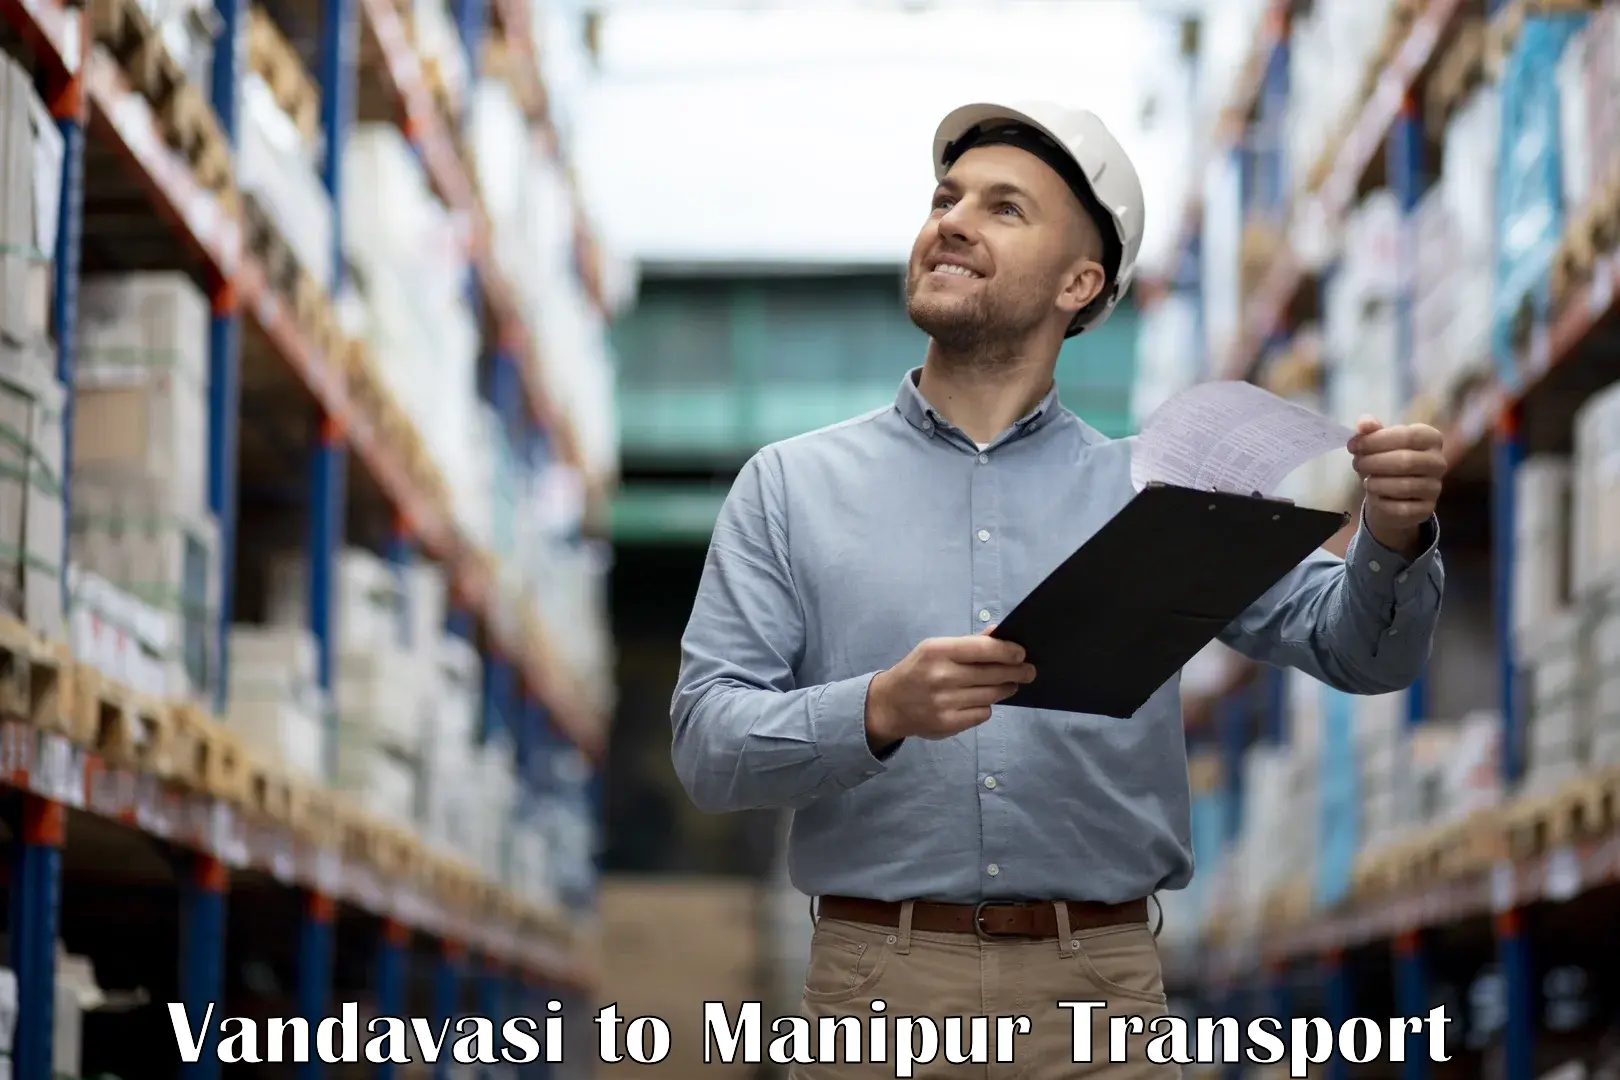 Air cargo transport services Vandavasi to Manipur